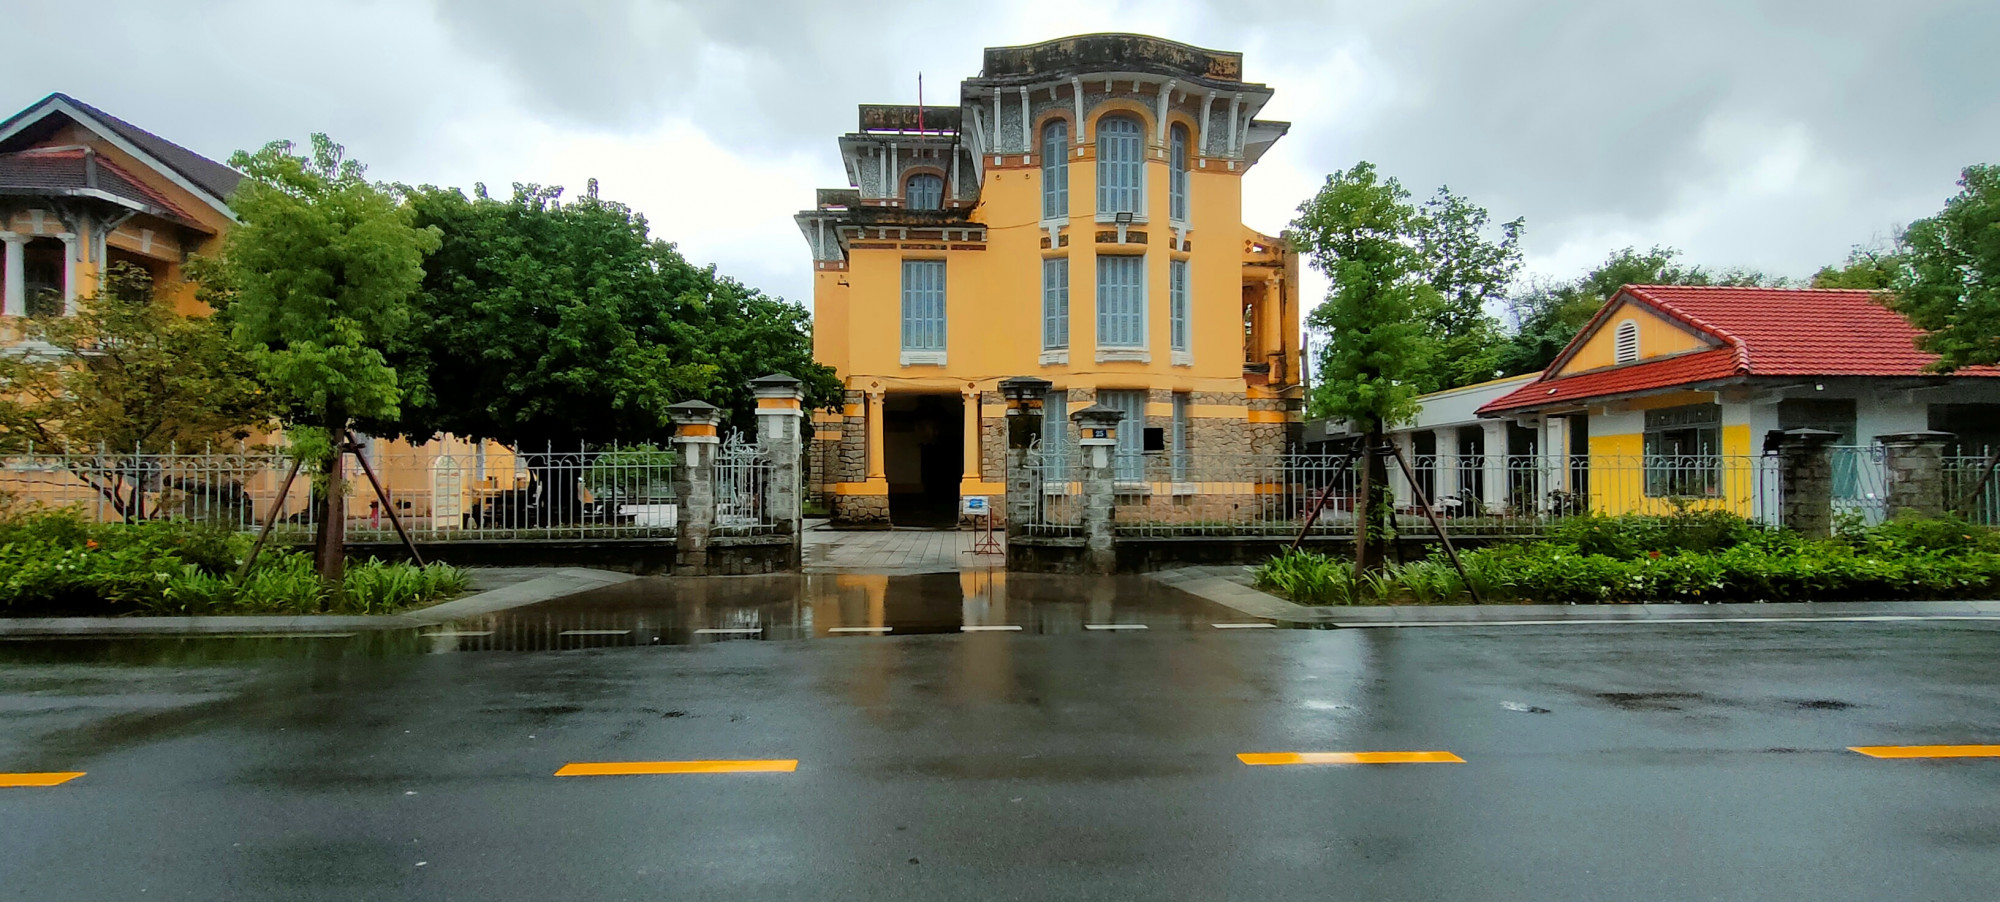 Ngôi biệt thự tuyệt đẹp ở đường Lê Lợi TP. Huế trước đây từng là trự sở UBND TP. Huế, Bảo tàng Văn hóa Huế...